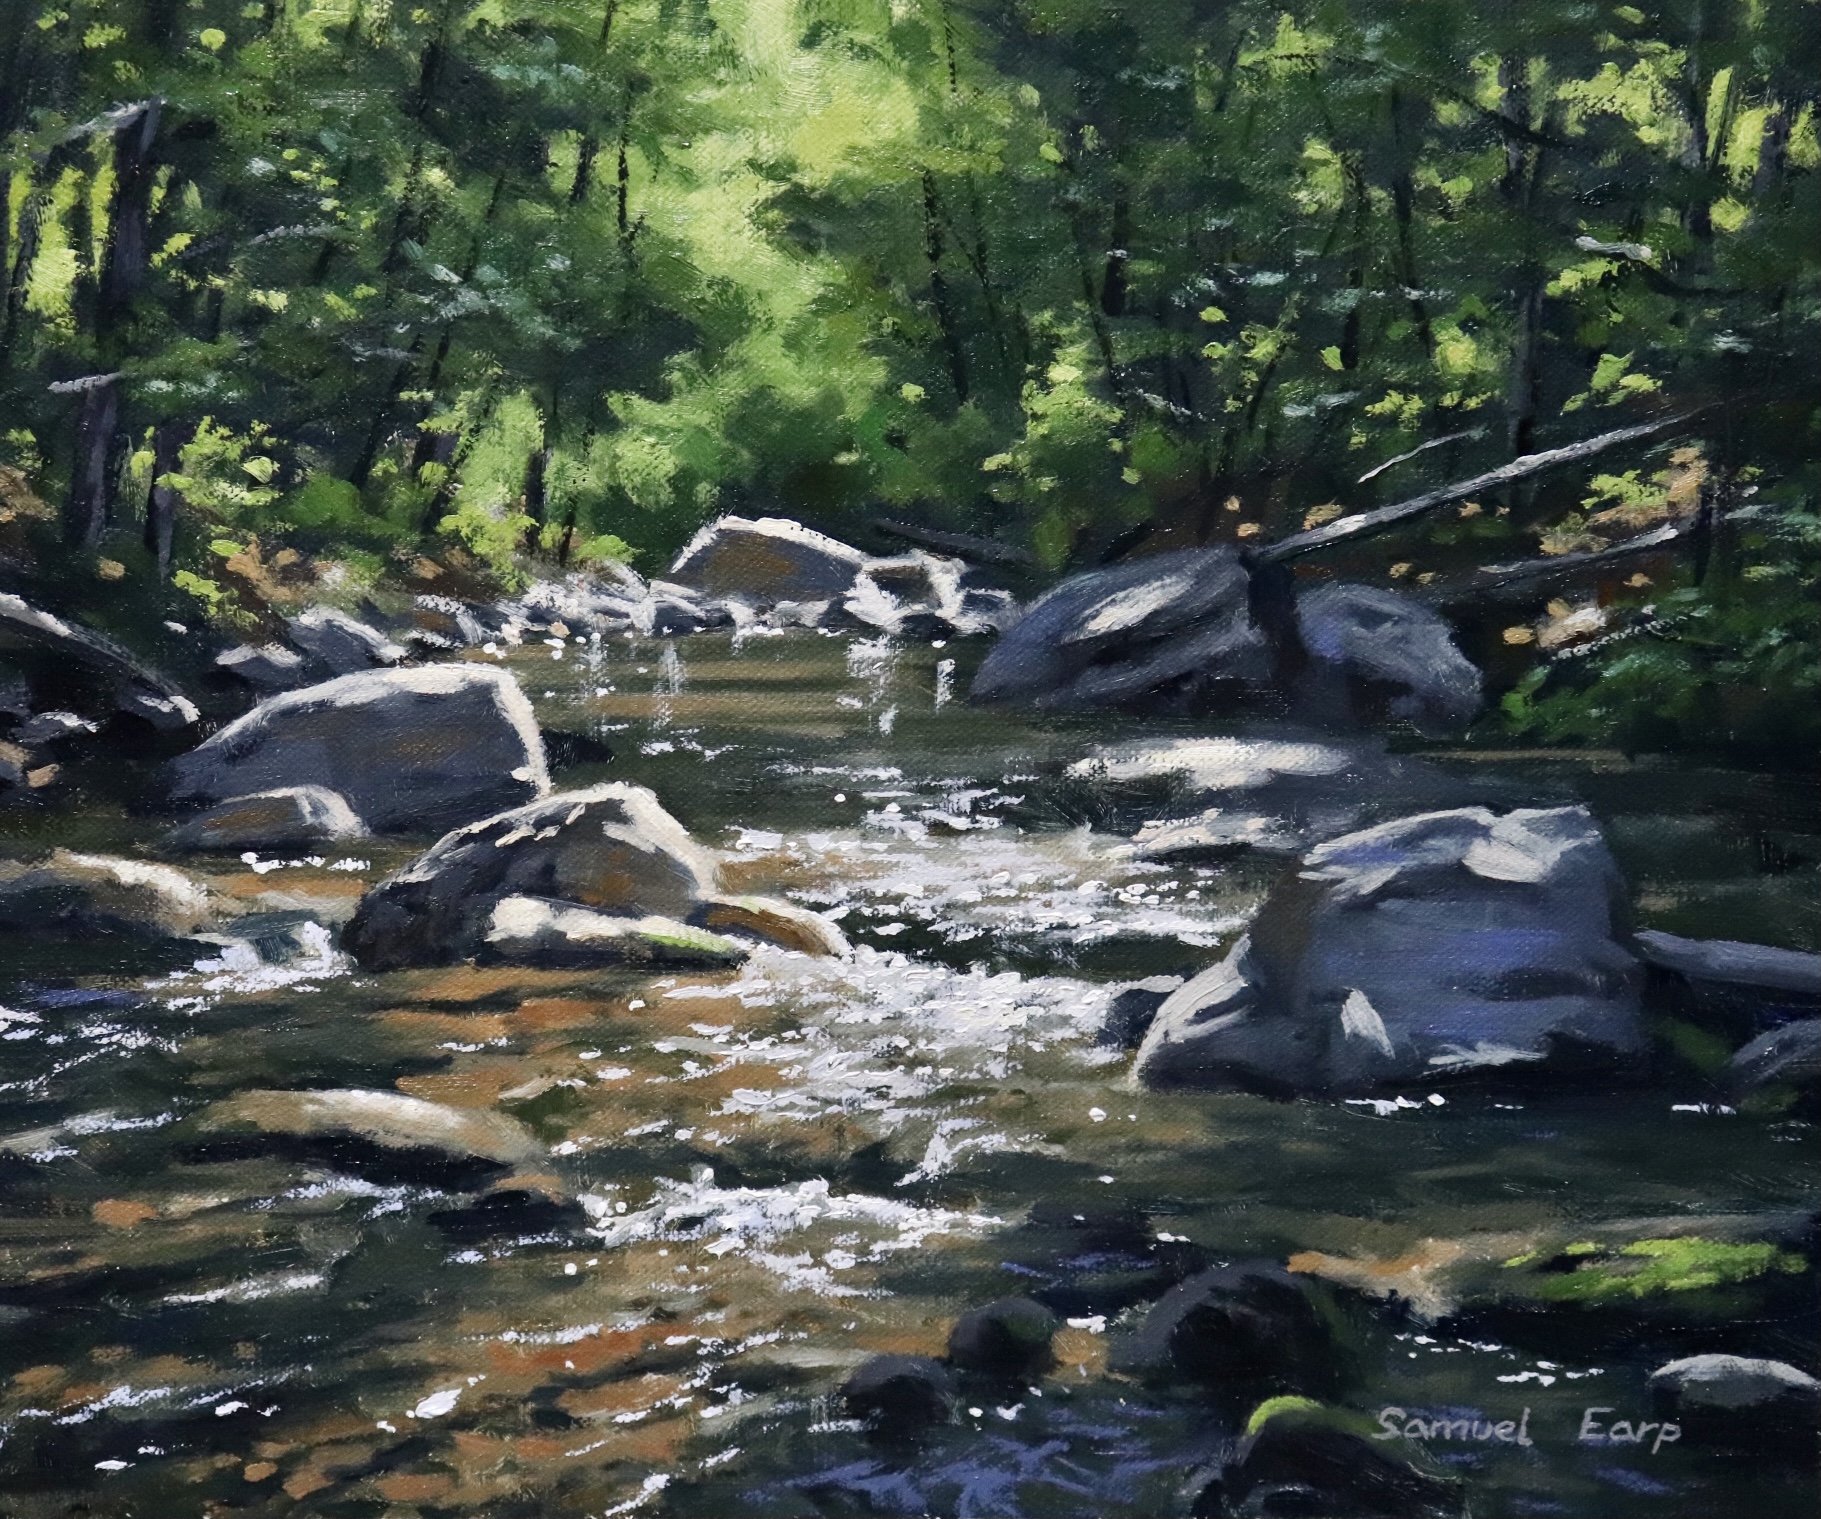 How to Paint a Forest, River Landscape - Samuel Earp Artist